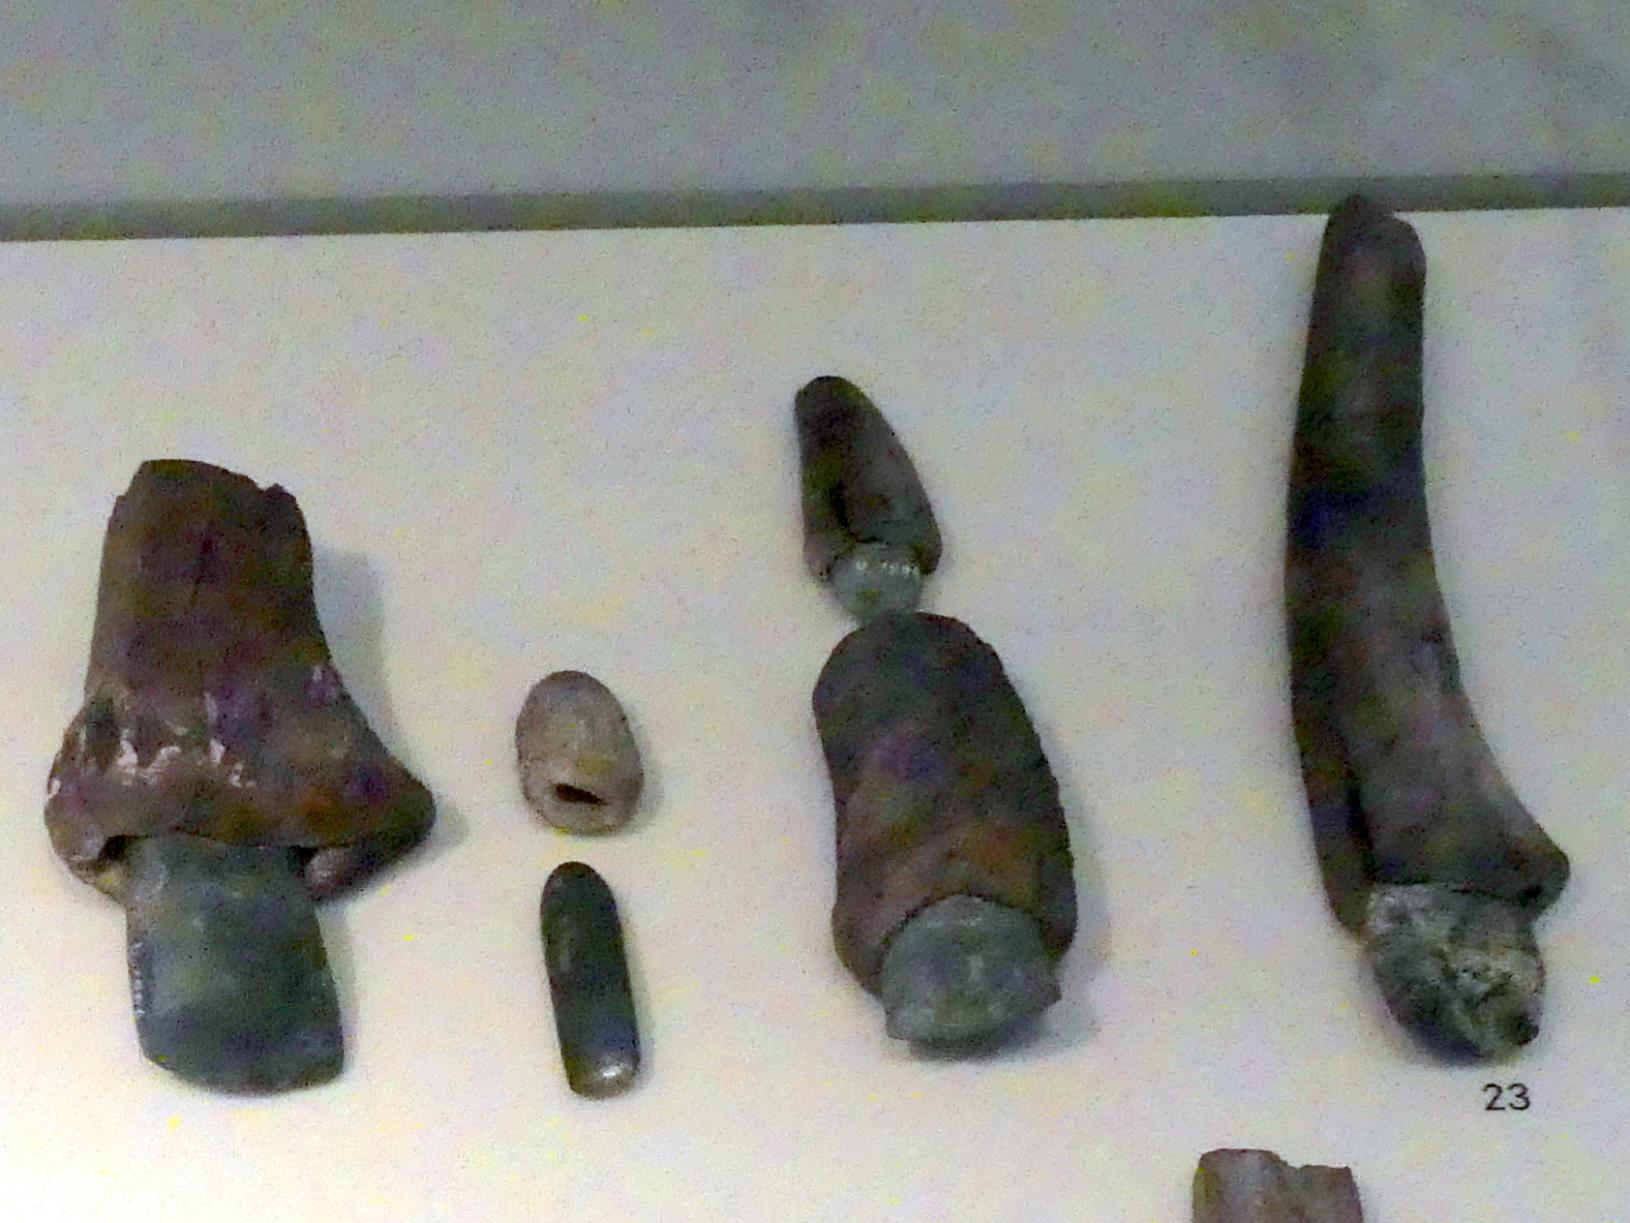 Beile in Geweihschäftung, Jungneolithikum, 4400 - 3500 v. Chr., Spätneolithikum, Undatiert, 4400 - 2800 v. Chr.